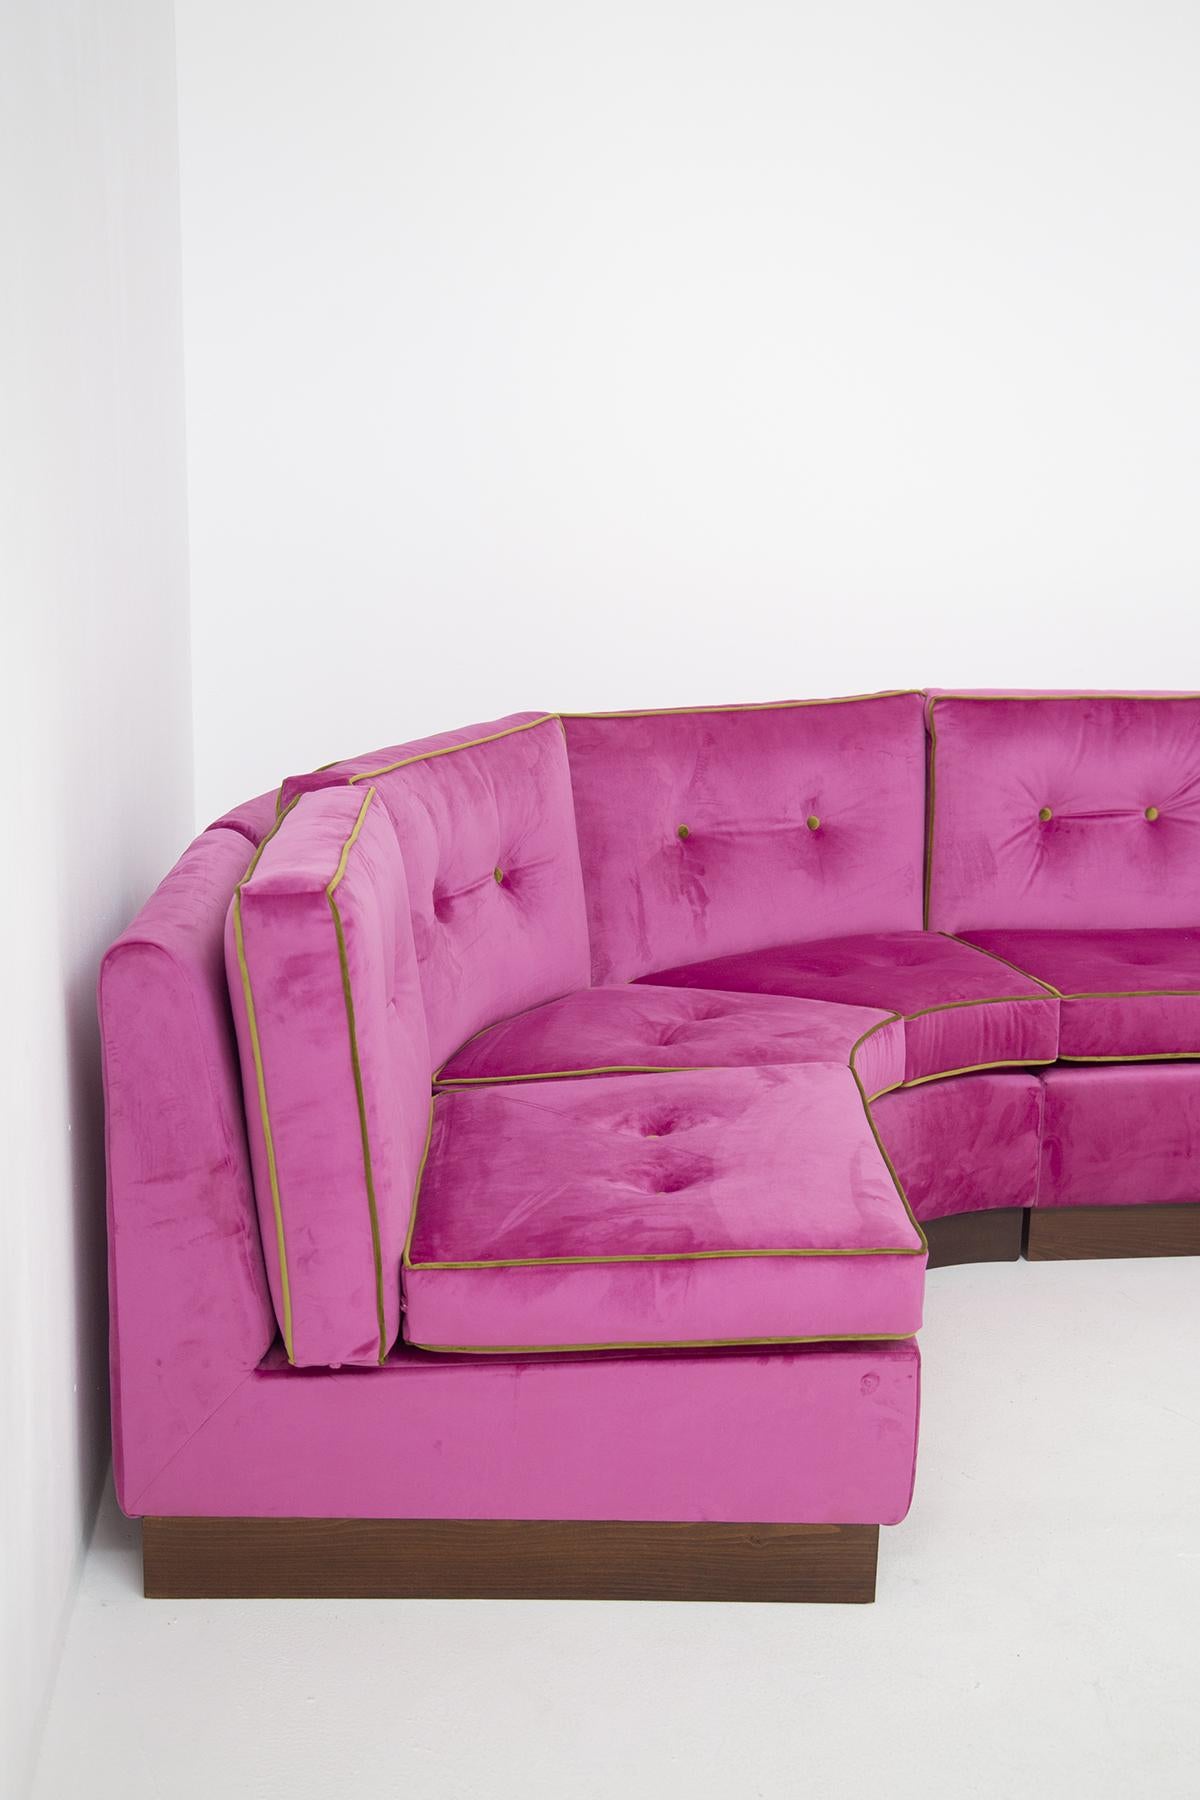 Modular Italian Sofà in Pink and Green Velvet, Restored 3